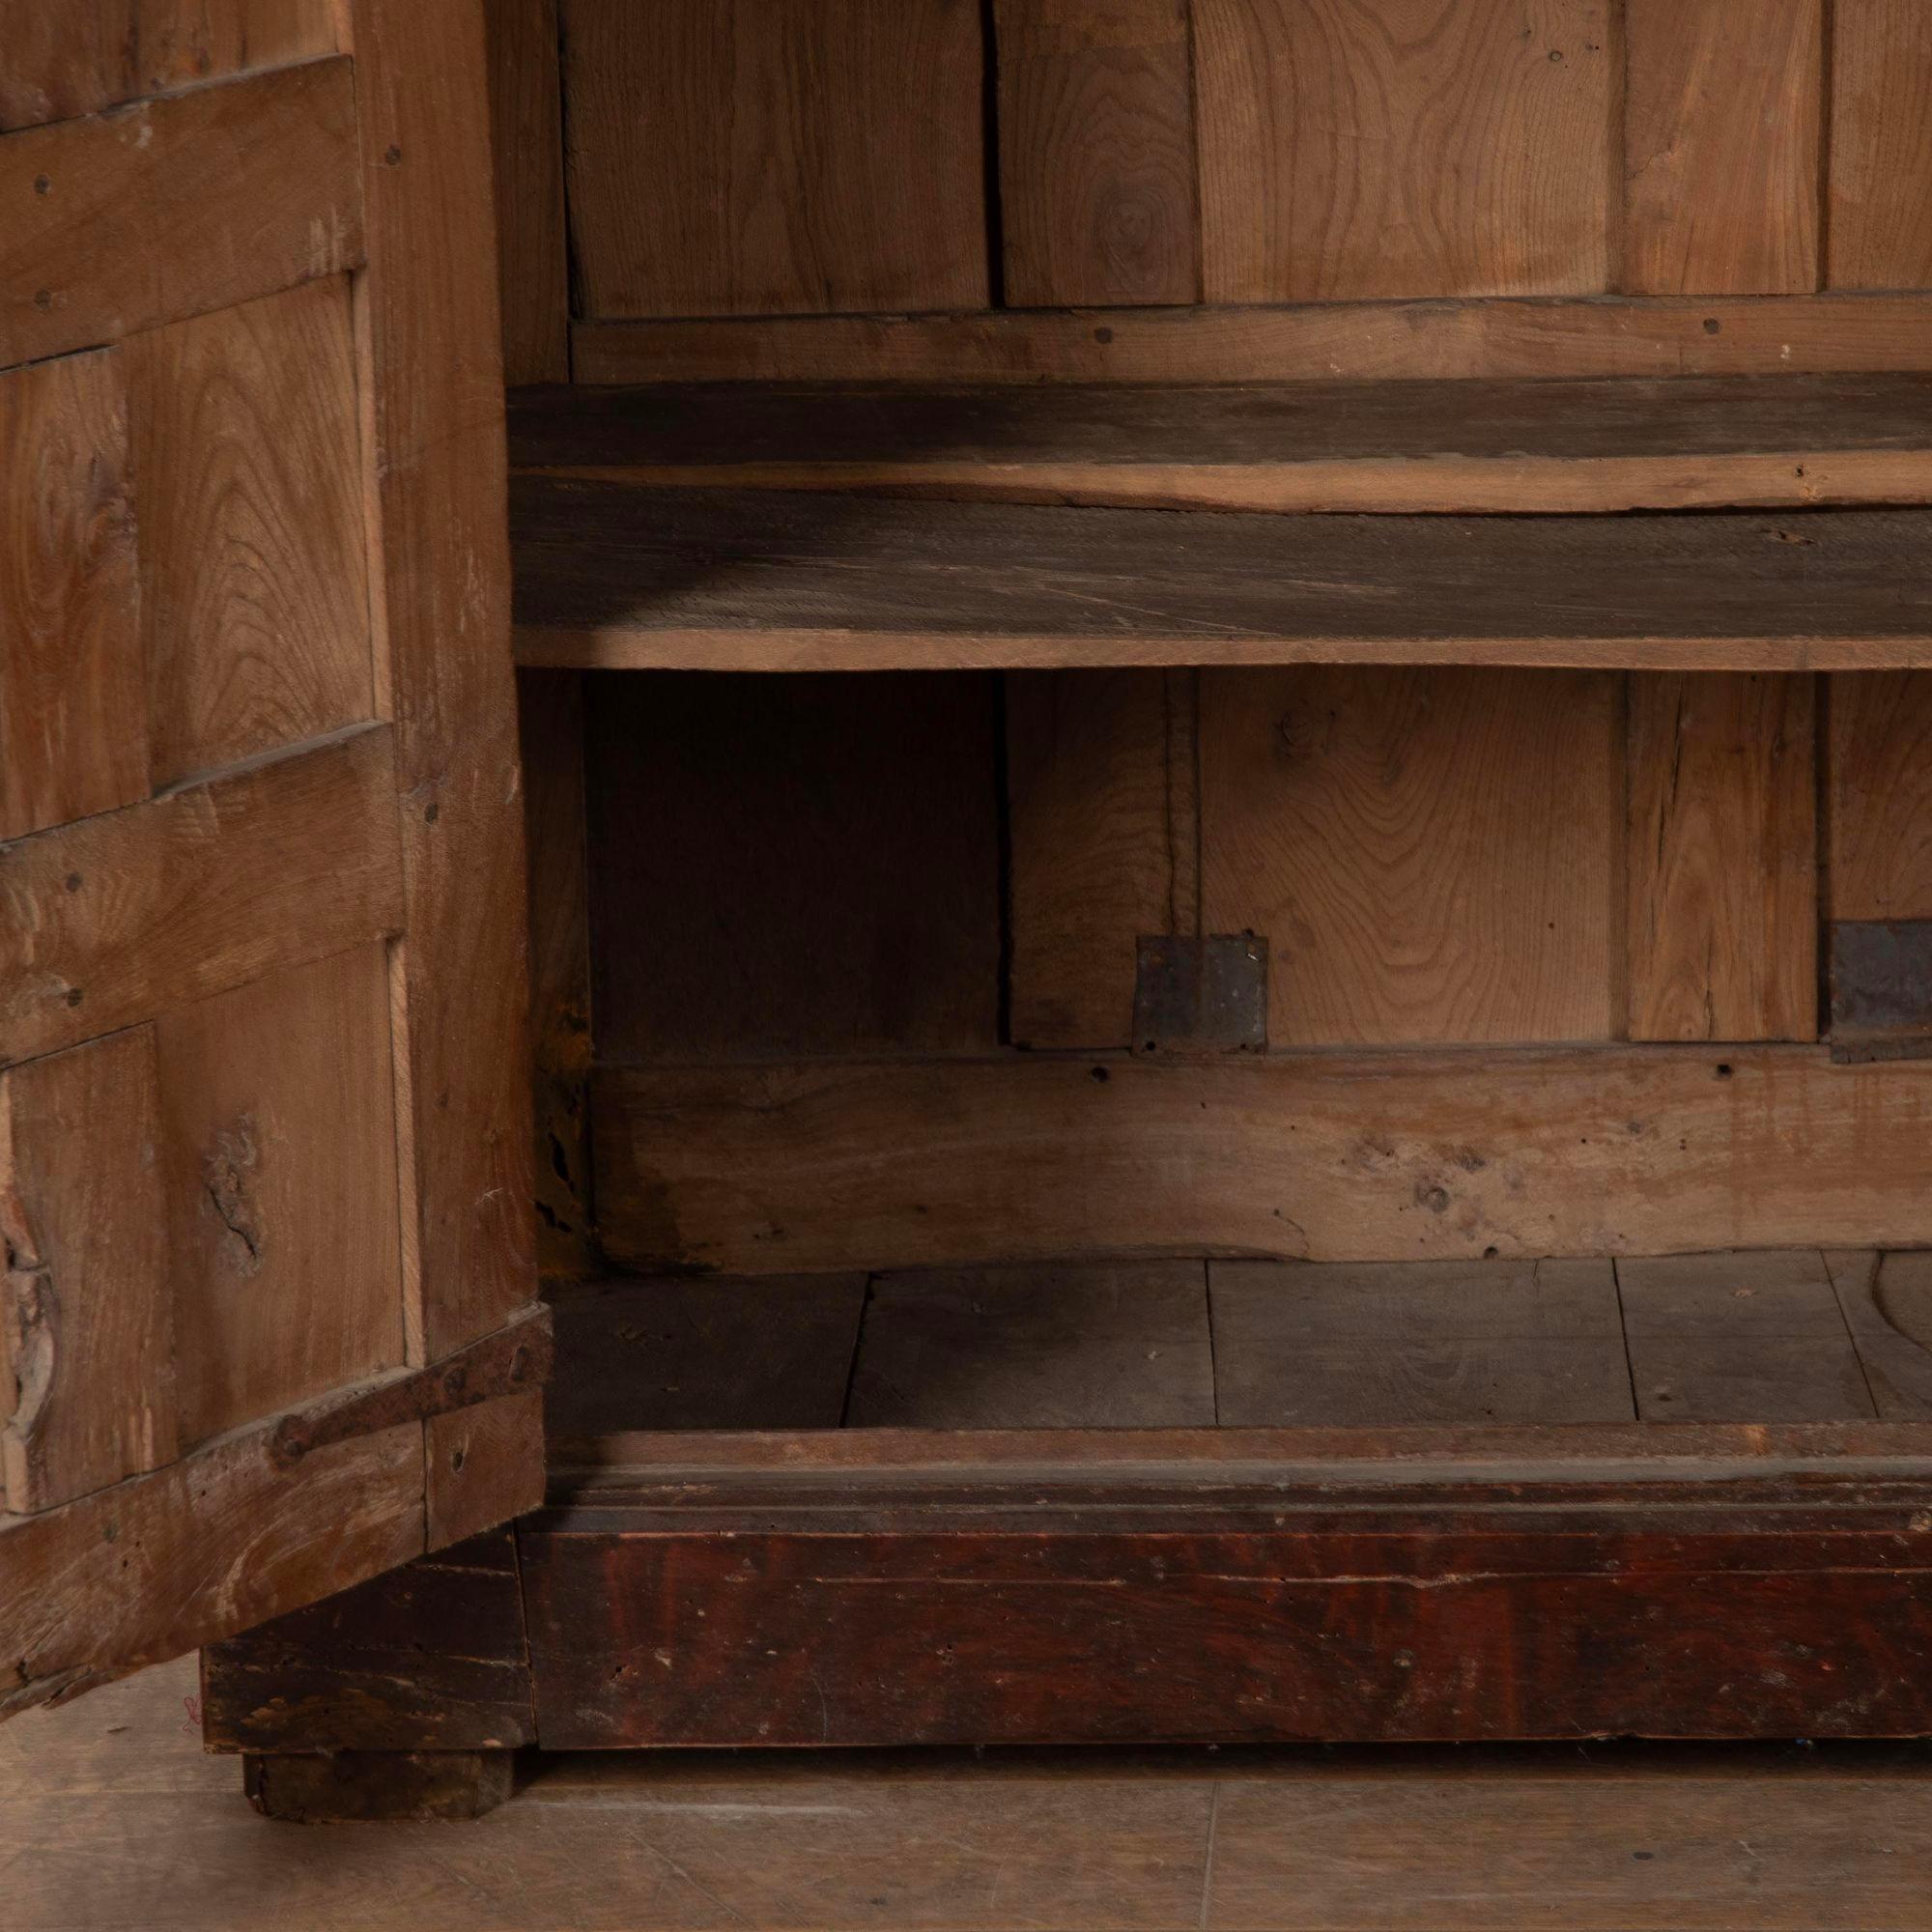 Wunderschöner spanischer Schrank aus dem 17. Jahrhundert mit originaler polychromer Oberfläche.
Abgesehen von kleineren Restaurierungsarbeiten ist dieser bemerkenswerte Schrank in völlig originalem Zustand mit originalen Deck- und Bodenplatten, Höhe